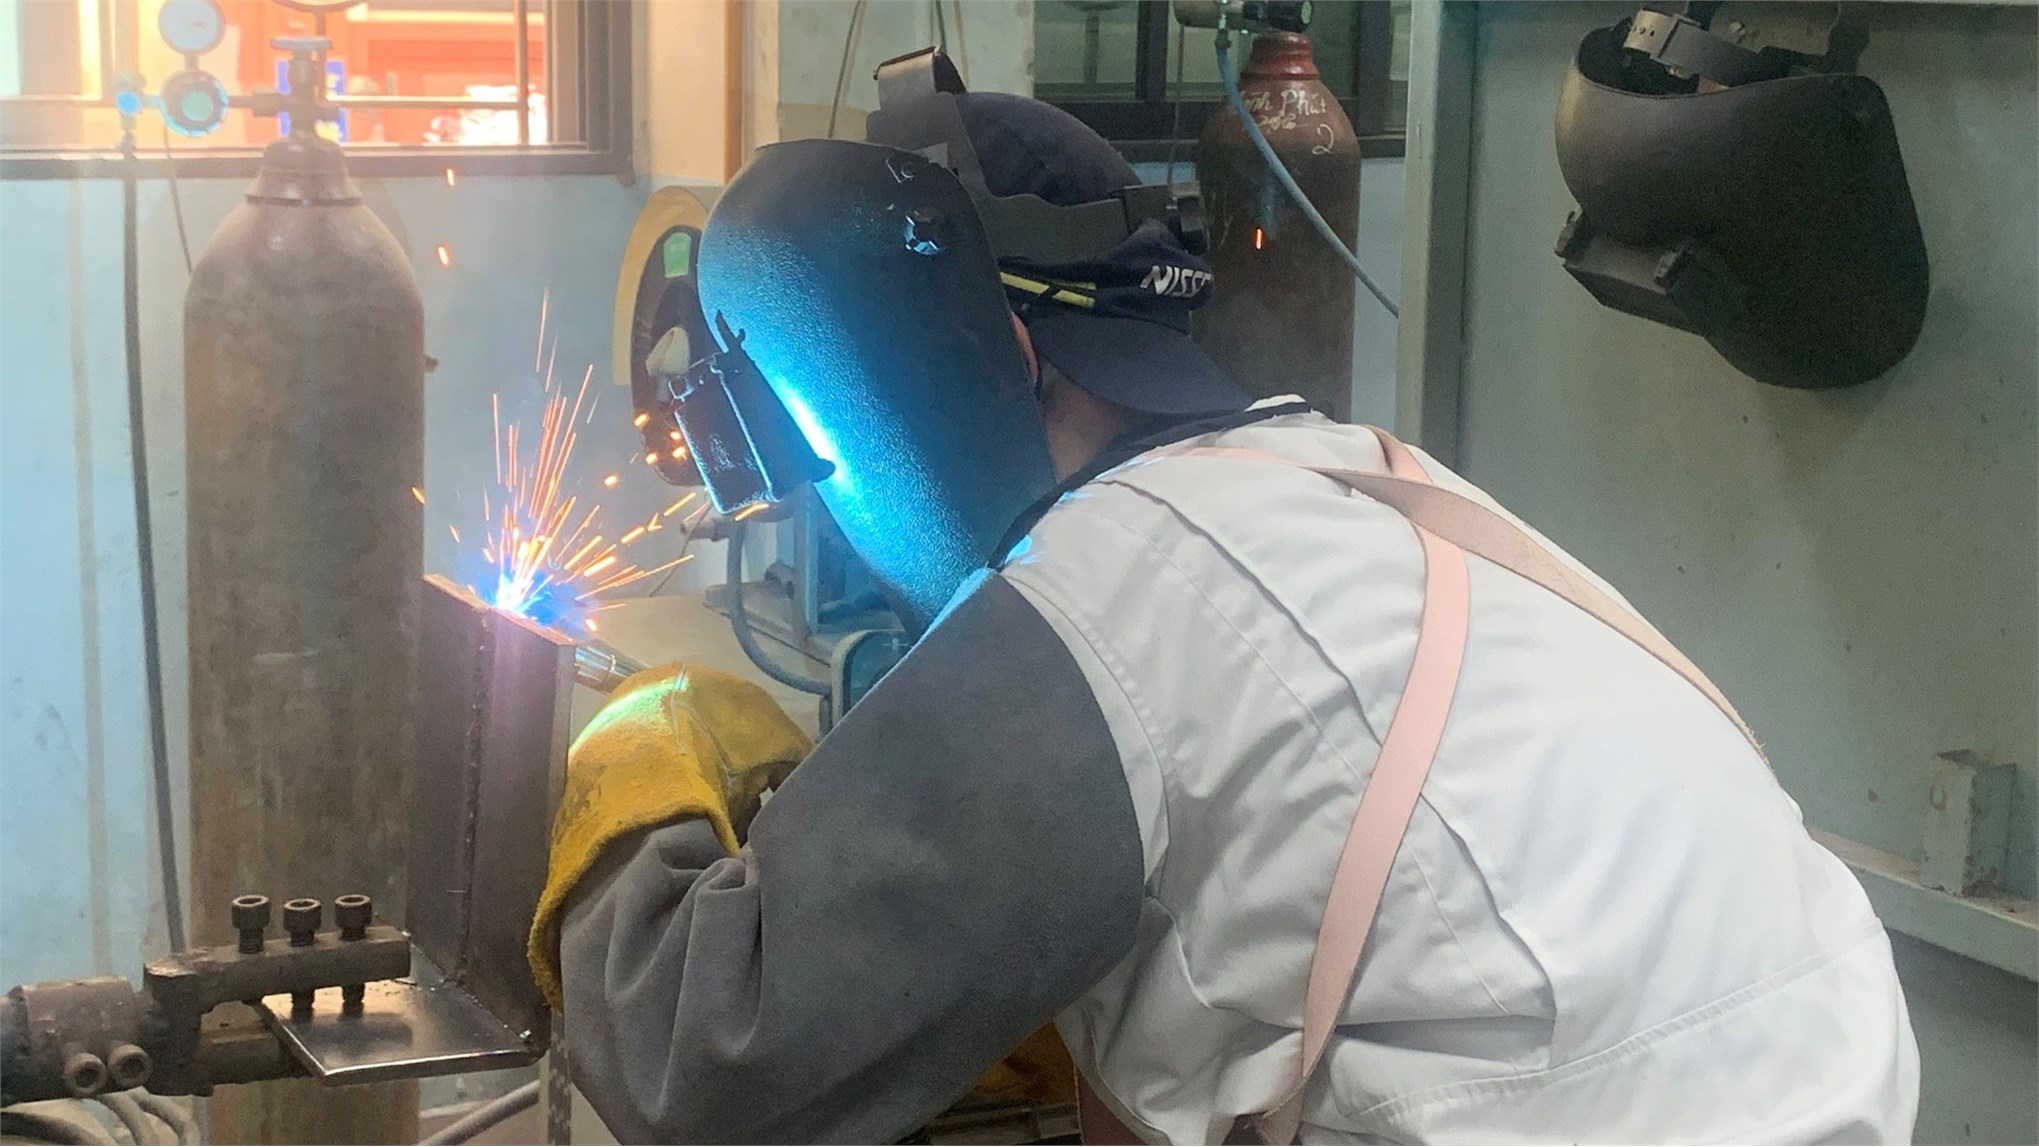 Tổ chức hội thi thợ giỏi công nhân lao động các KCN và chế xuất Hà Nội lần thứ VIII năm 2022 tại Trường Đại học Công nghiệp Hà Nội